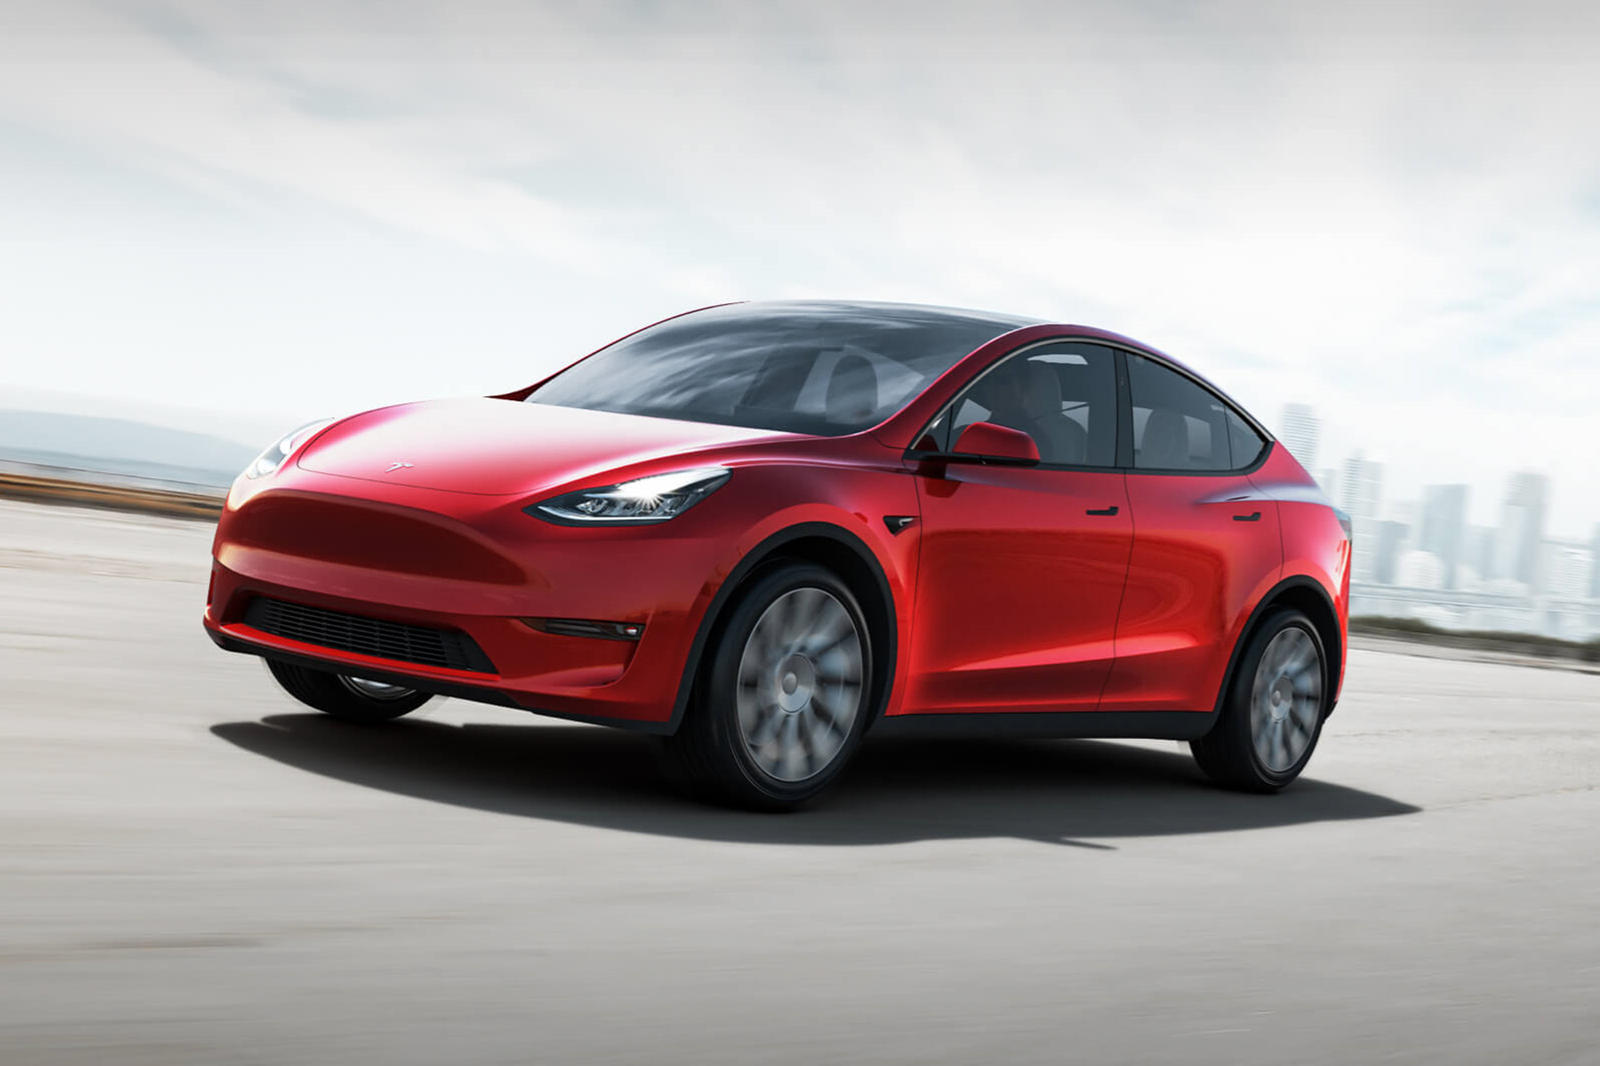 Прямо сейчас Tesla Model Y доступен в двух вариантах: Long Range и Performance. Цены на него начинаются с 51 190 долларов, Long Range Model Y в настоящее время является наиболее доступным вариантом, но Илон Маск пообещал, что в будущем будет доступен